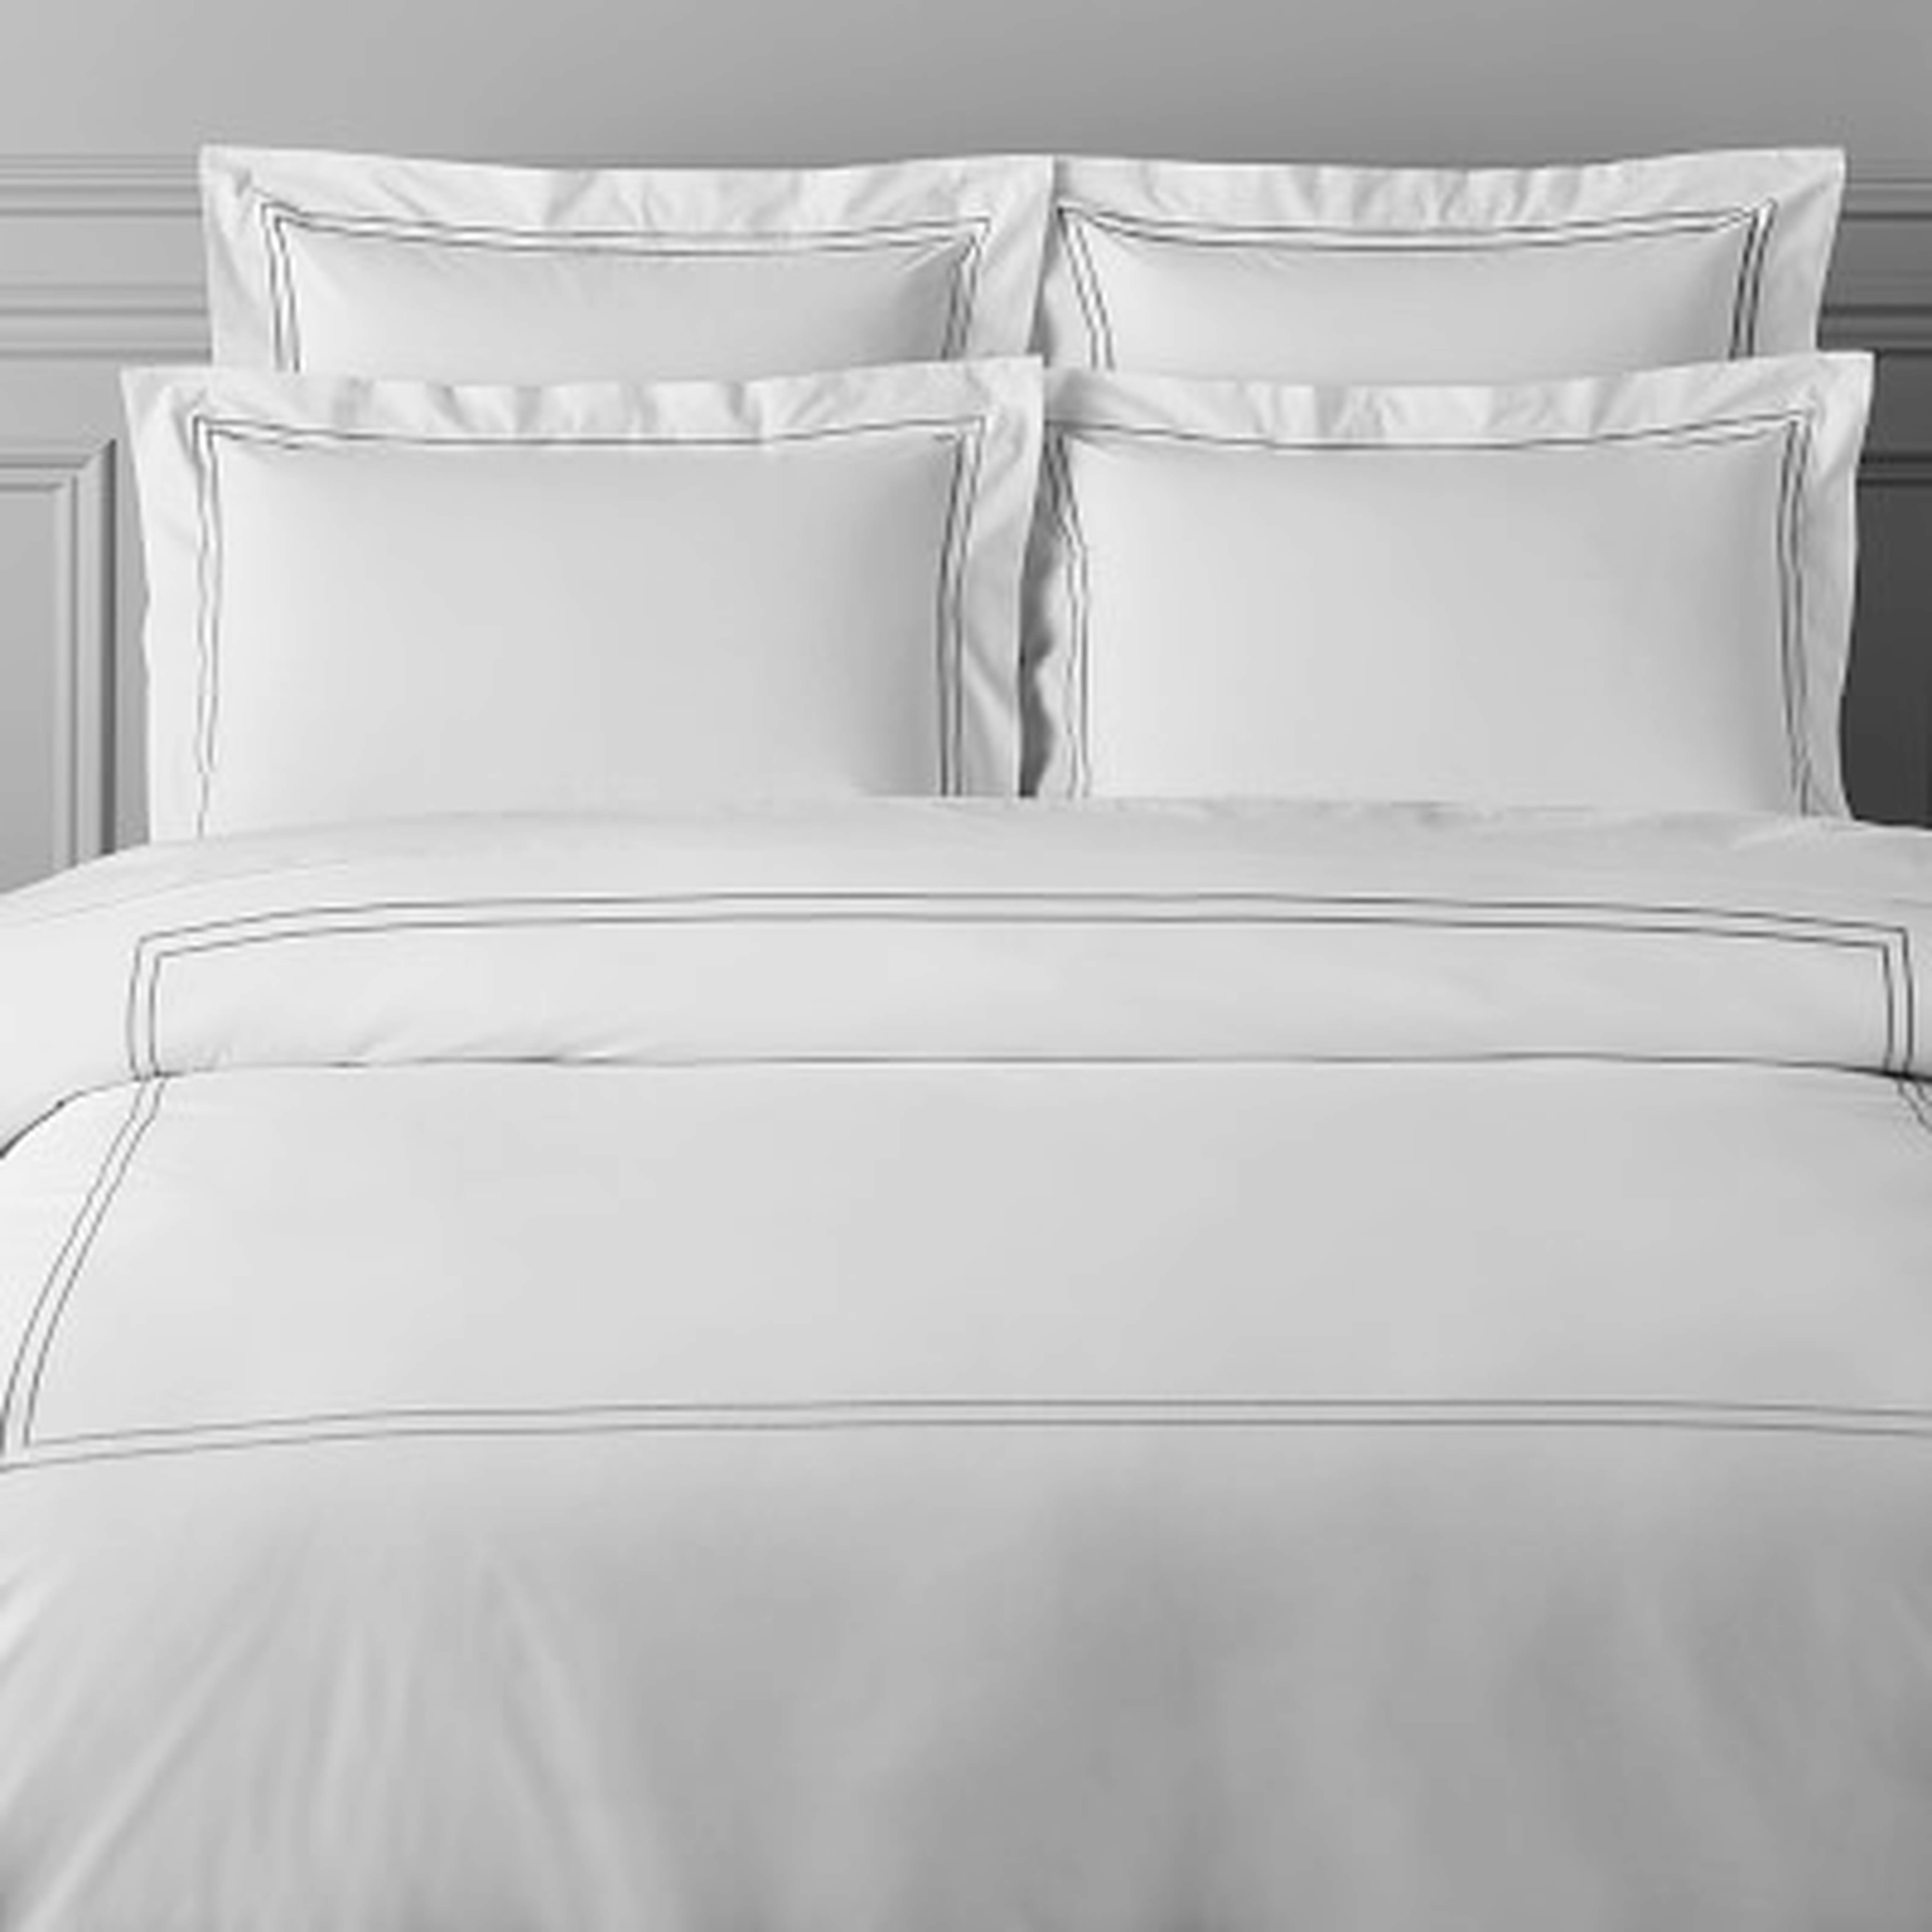 White Hotel Bedding, Duvet Cover, King, Gray - Williams Sonoma